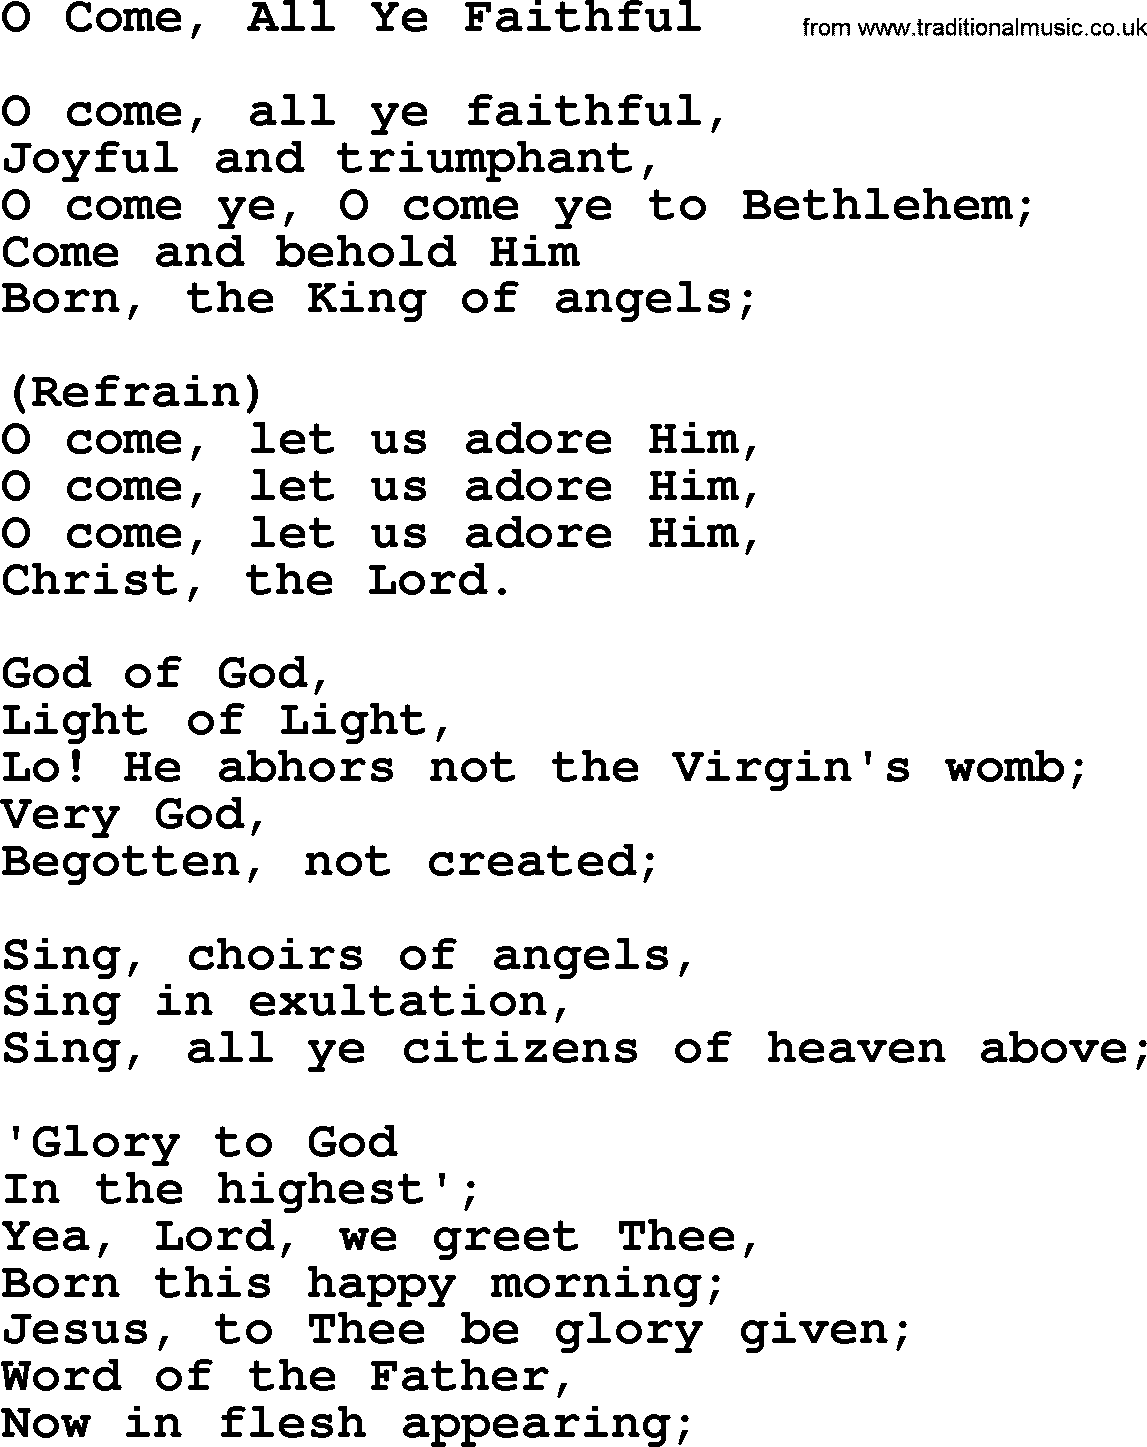 Catholic Hymn: O Come, All Ye Faithful lyrics with PDF